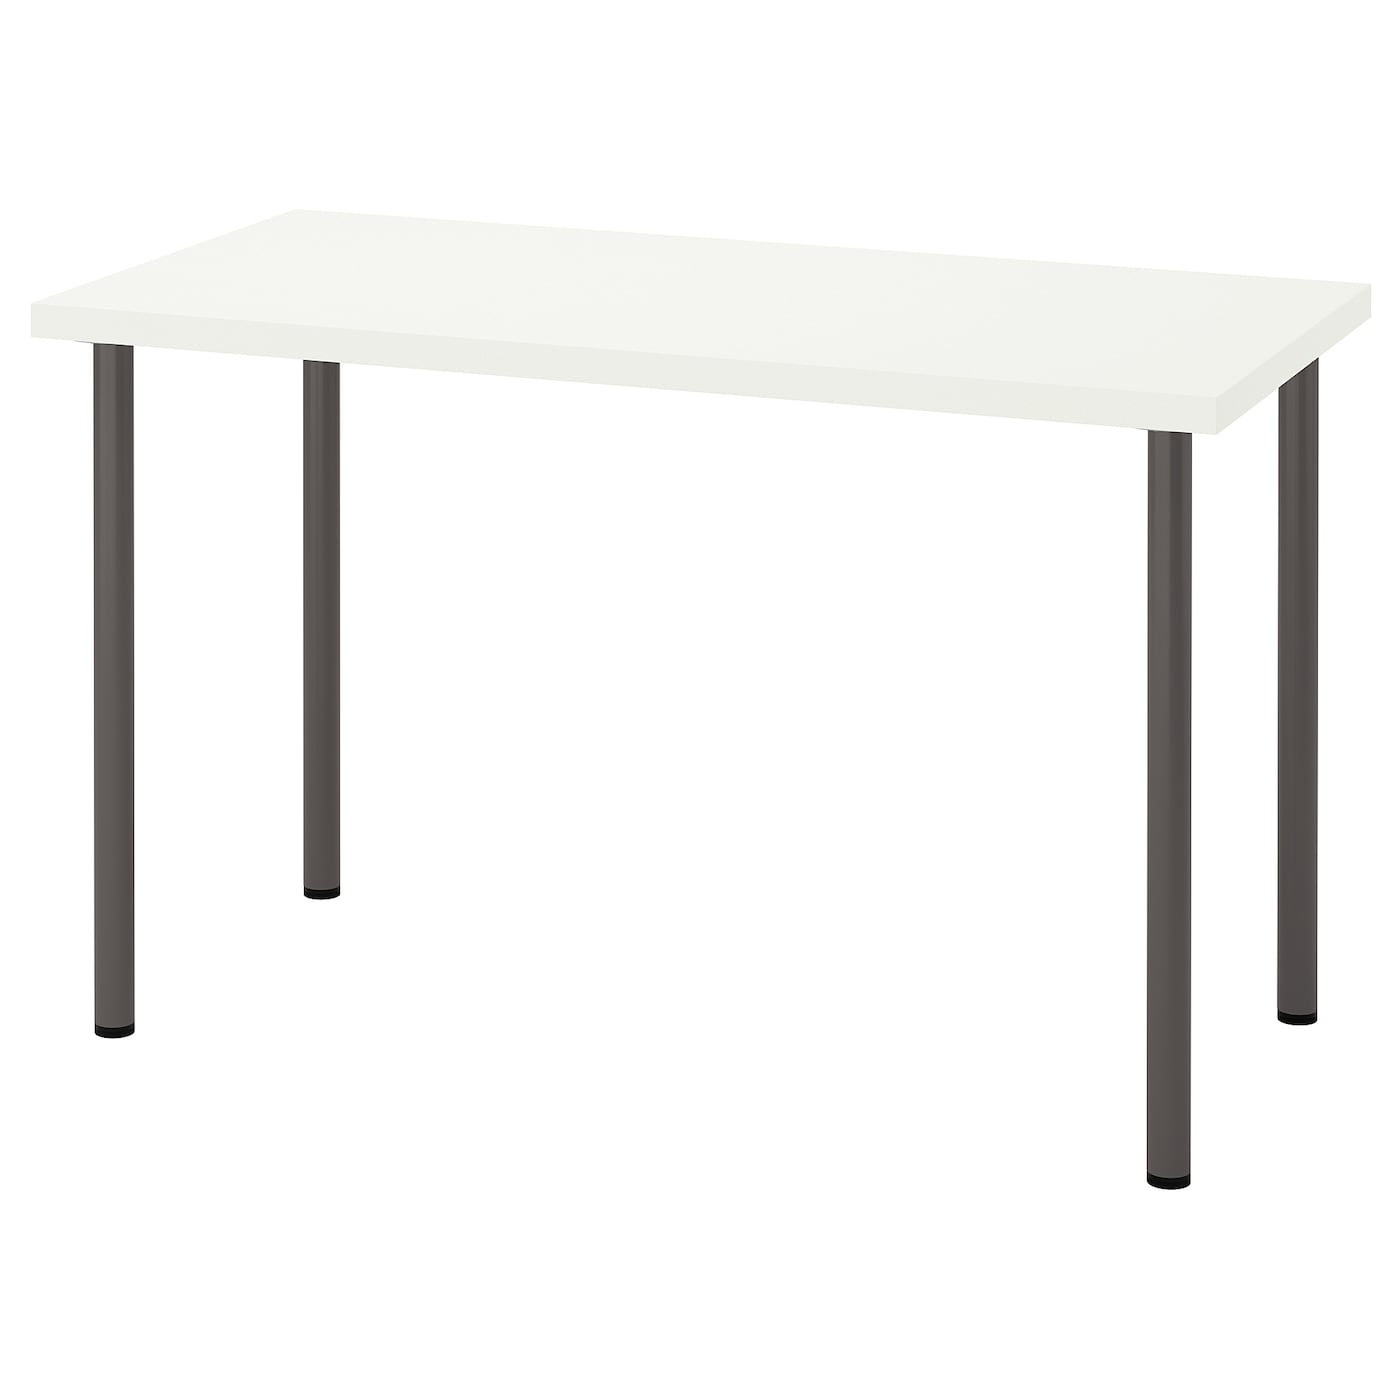 Письменный стол - IKEA LAGKAPTEN/ADILS, 120х60 см, темно-серый/белый, ЛАГКАПТЕН/АДИЛЬС ИКЕА